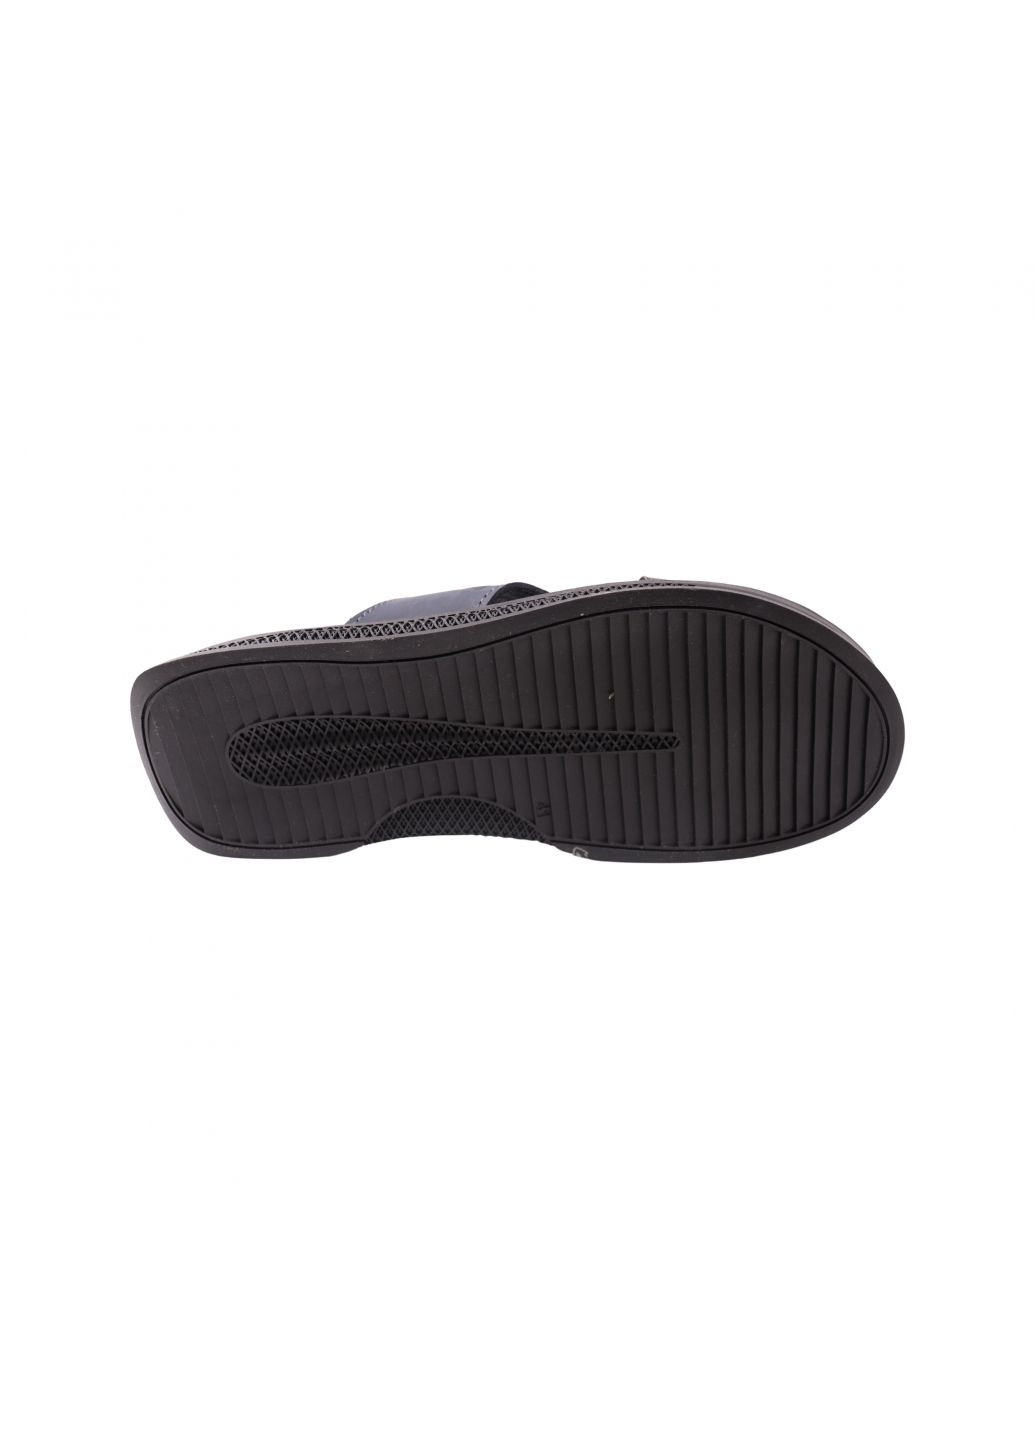 Шльопанці чоловічі чорні натуральна шкіра Maxus Shoes 122-23lshc (259112670)